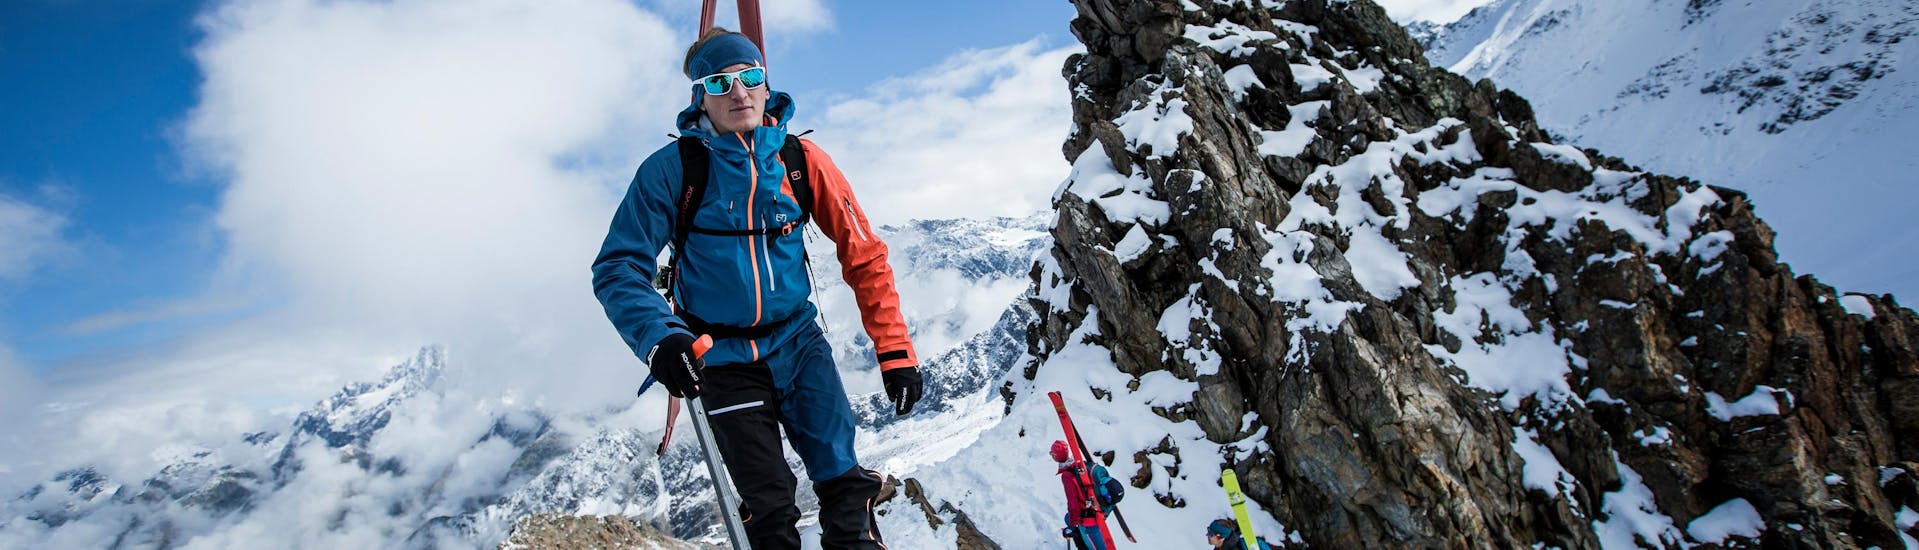 De toerskiërs beklimmen de top van een berg tijdens hun toerski-gids voor beginners met skischule obergurgl.